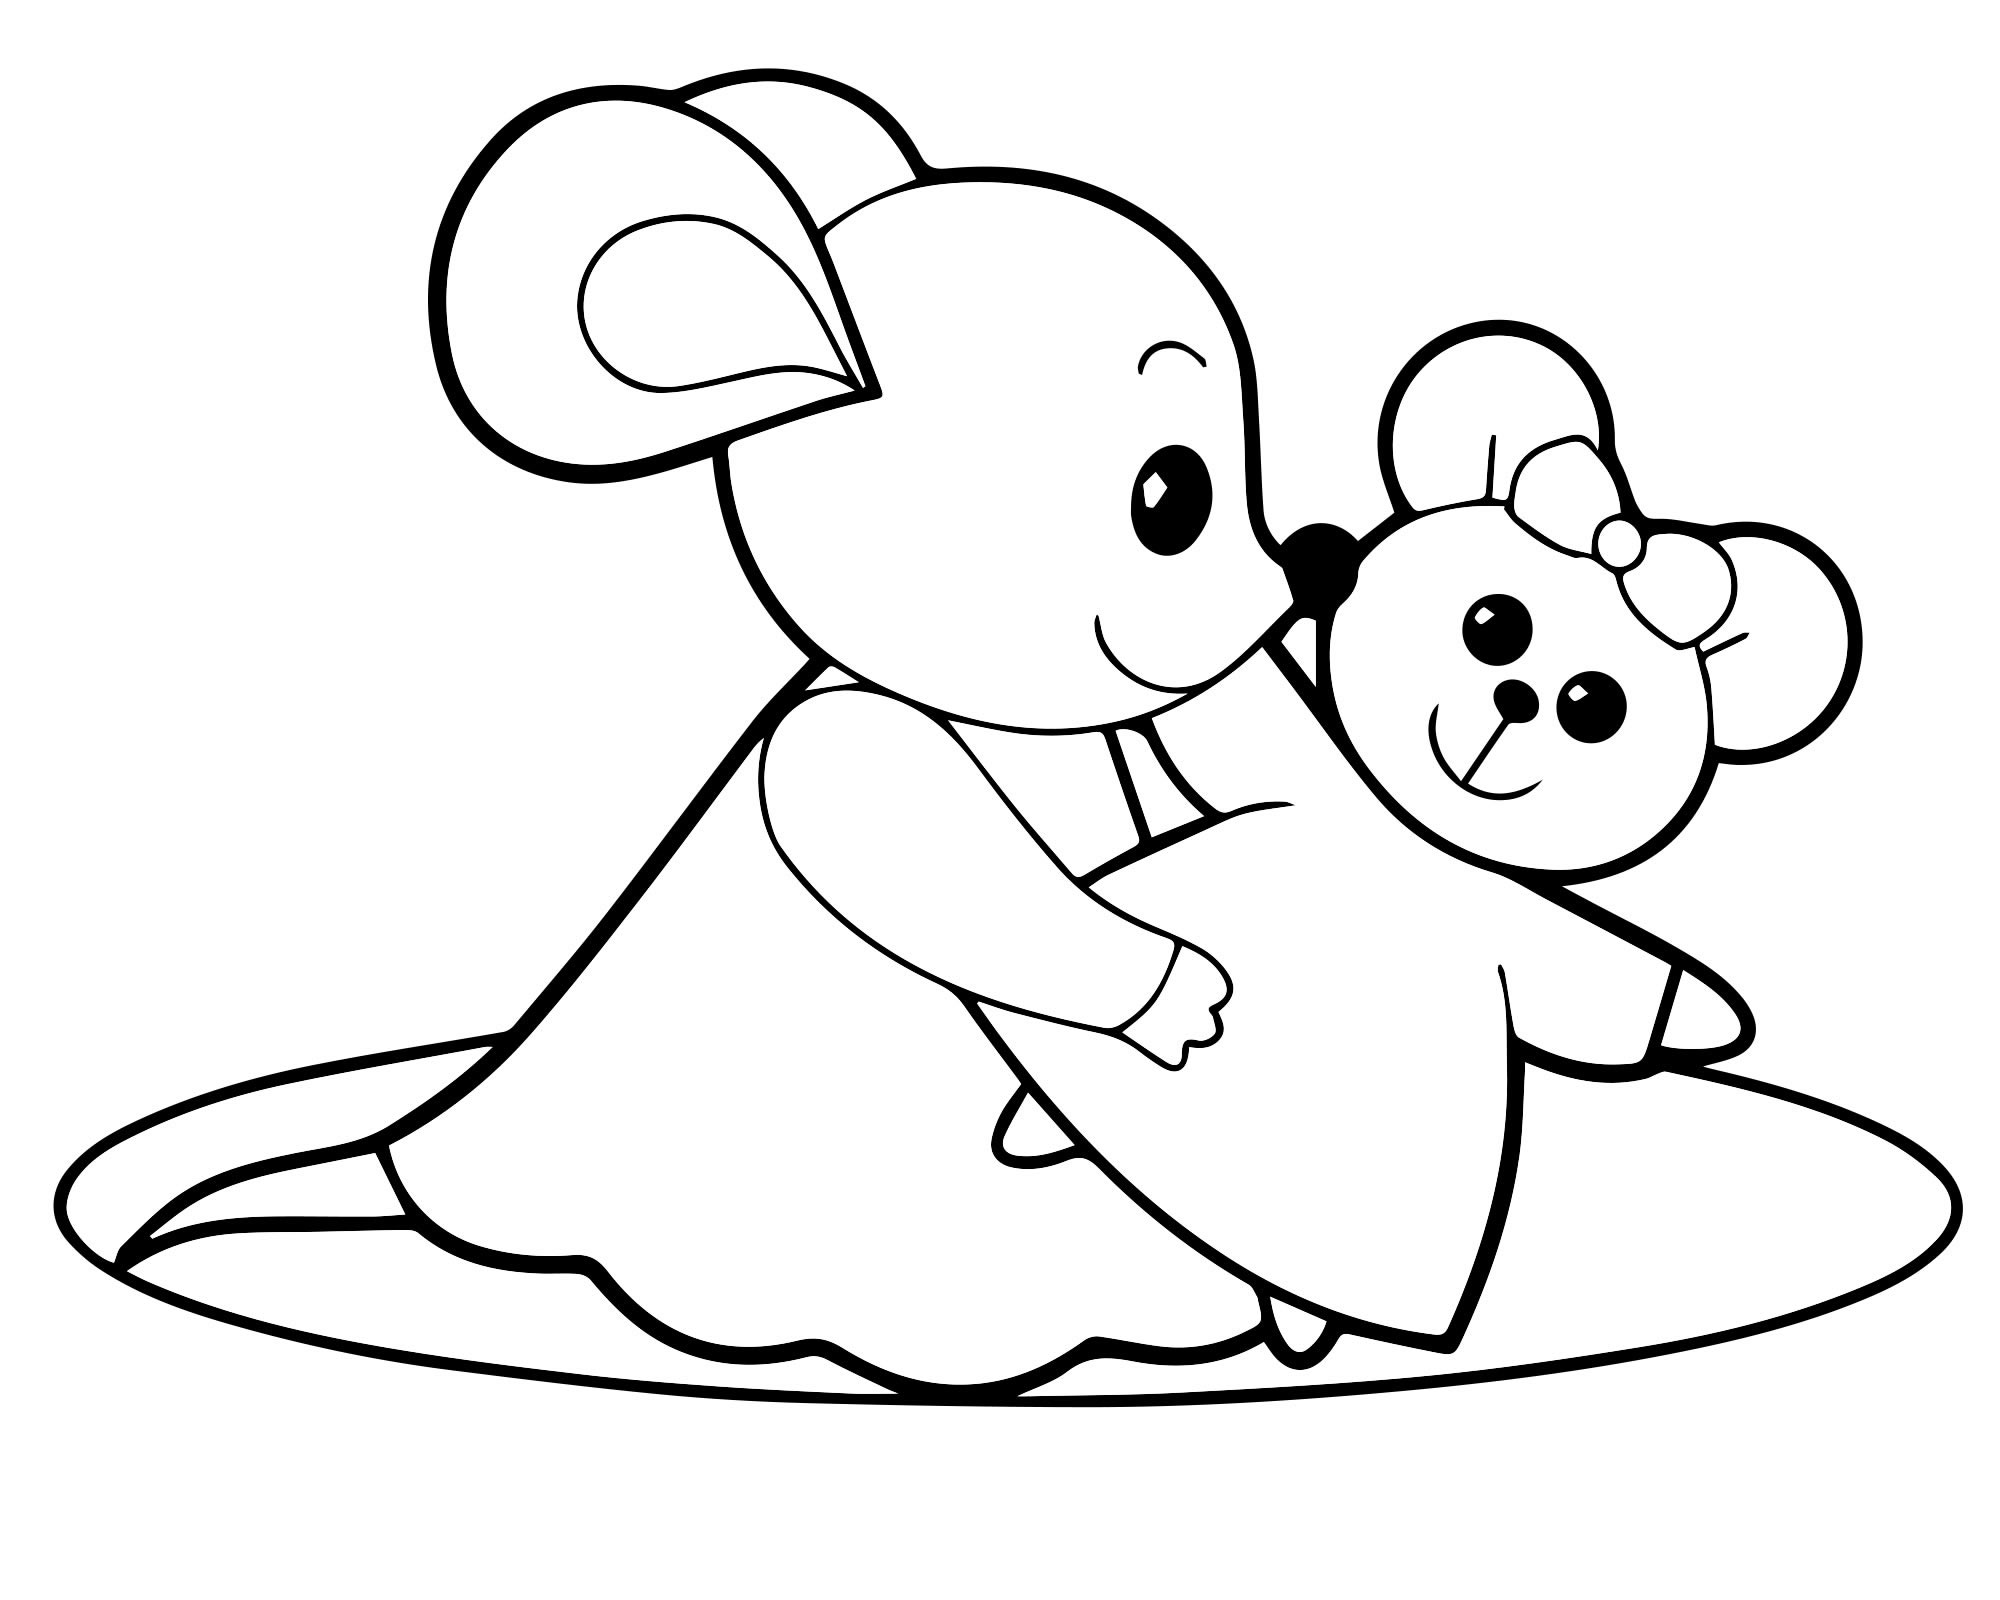 Красивая мышка раскраска для детей